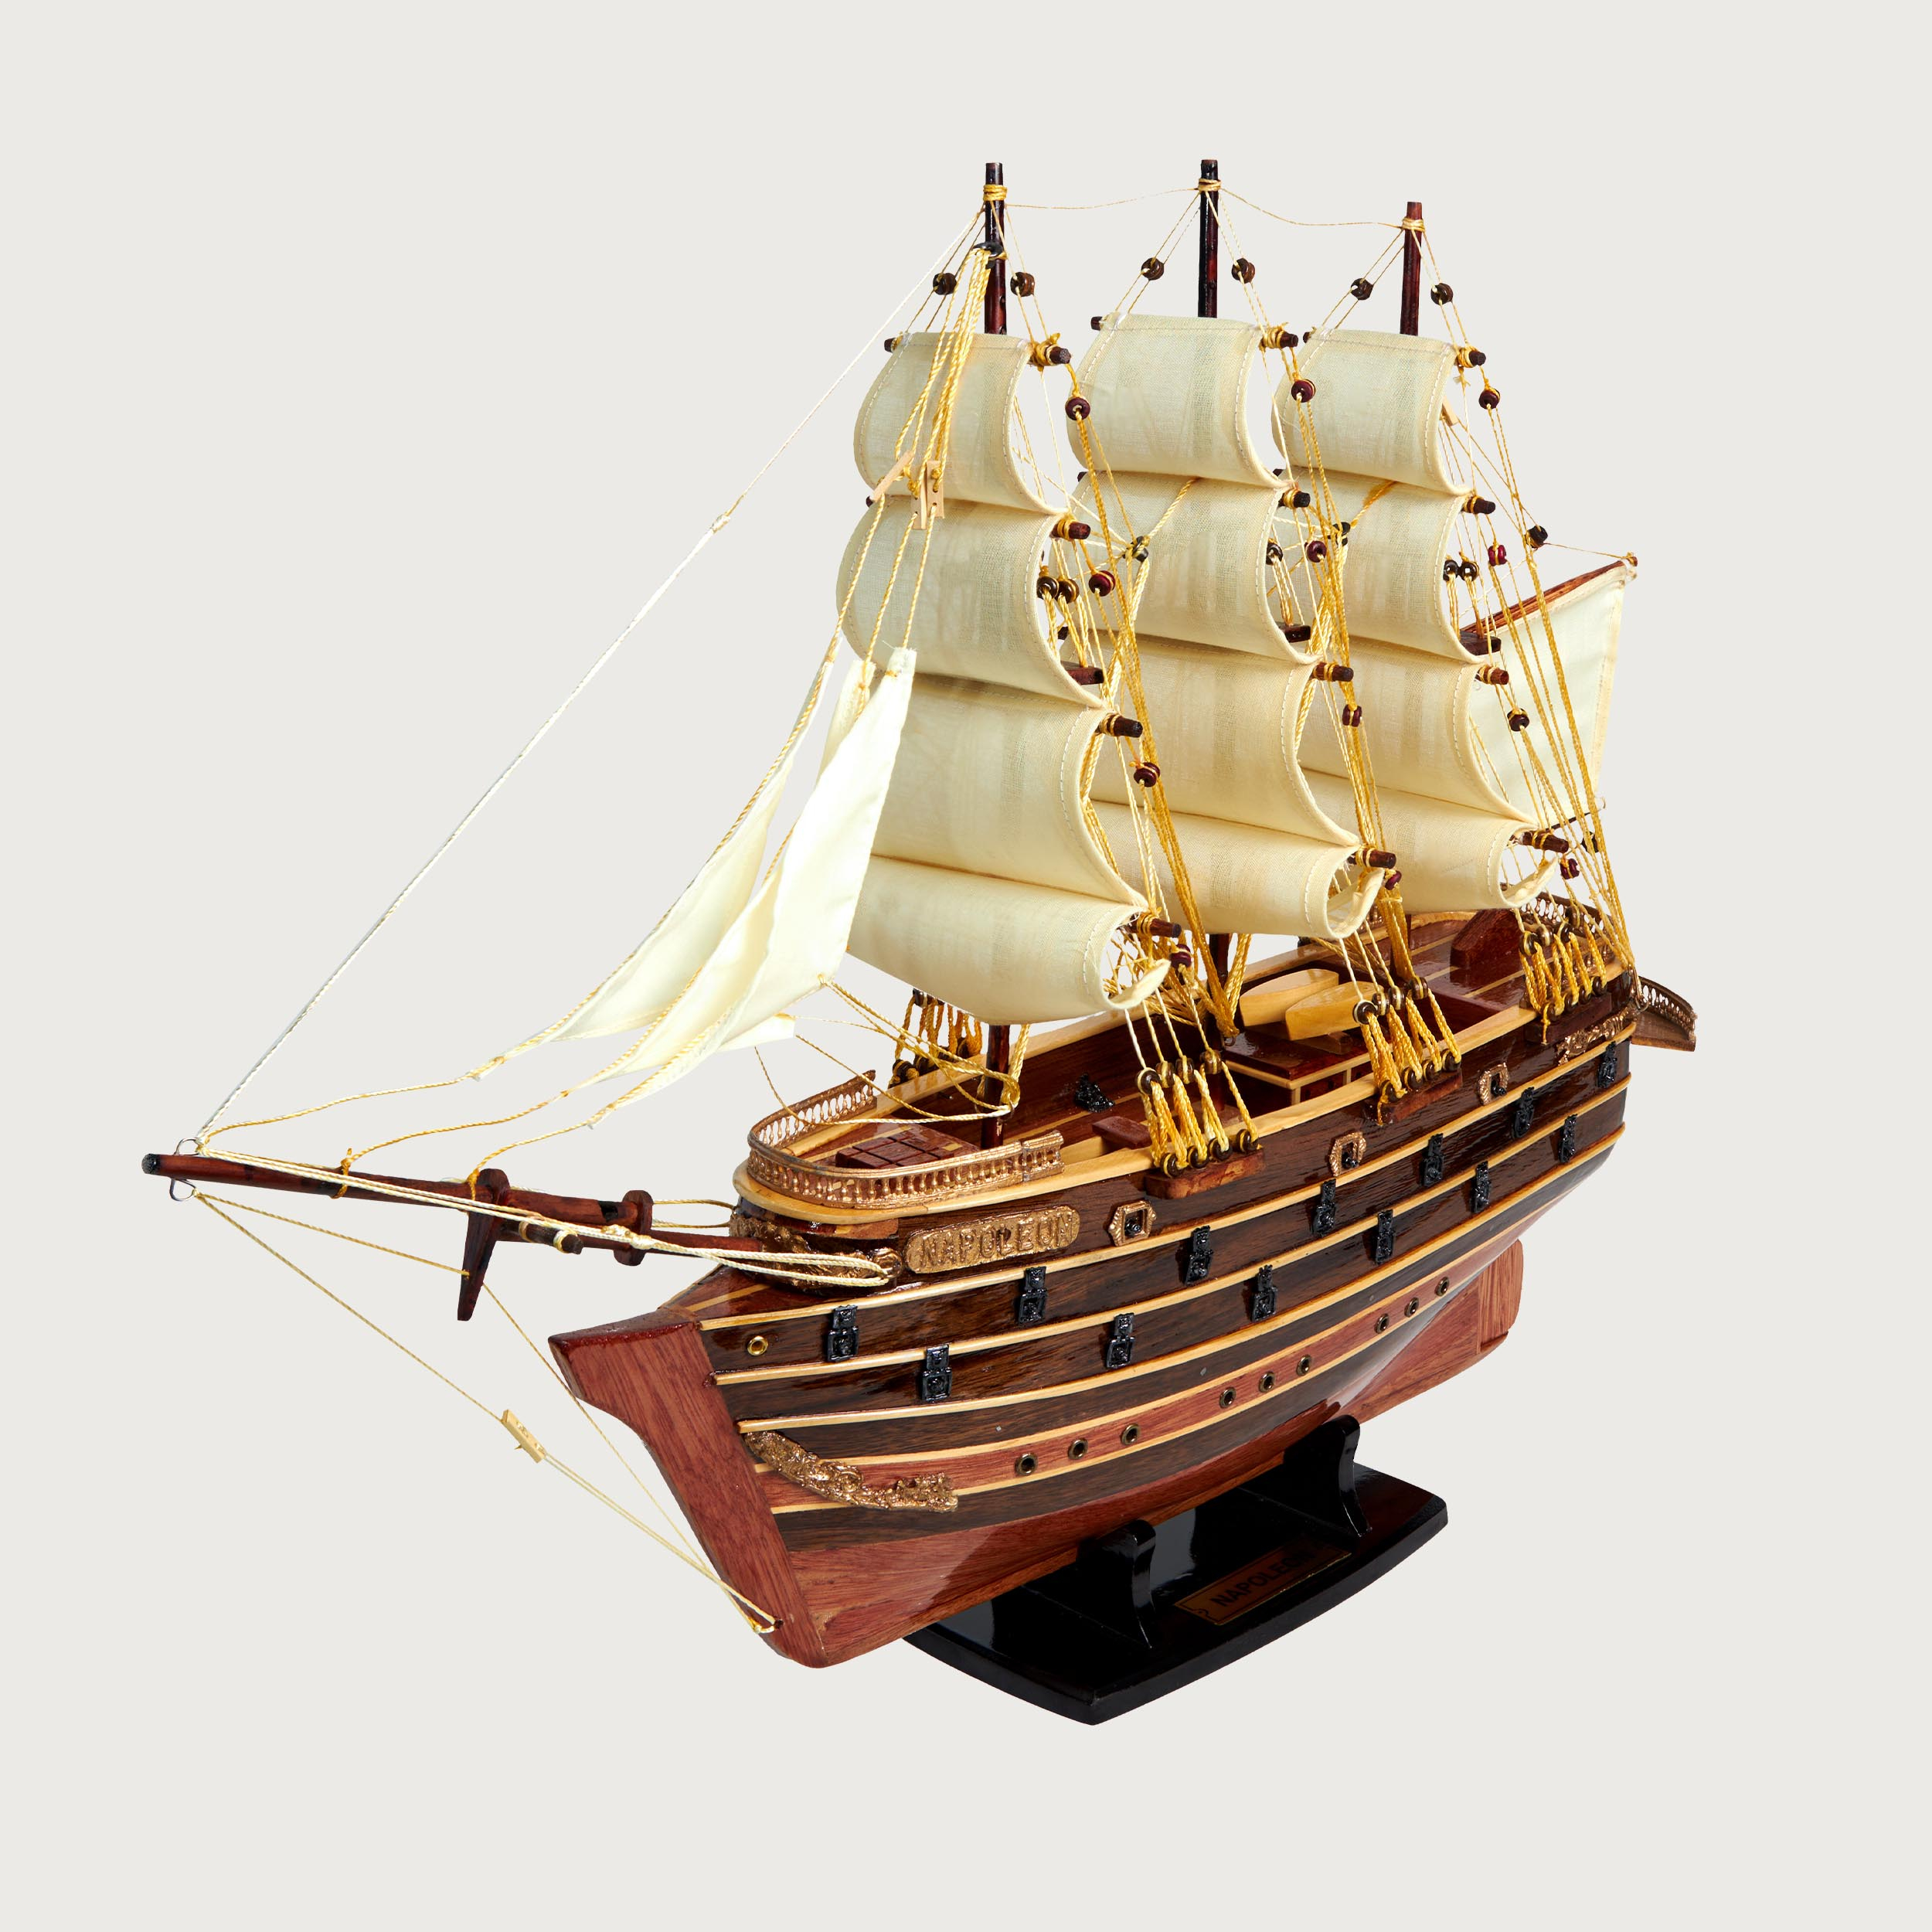 Mô Hình Tàu Gỗ Chở Hàng Napoleon cao cấp, gỗ tự nhiên, lắp ráp sẵn 1st FURNITURE bằng gỗ tự nhiên cao cấp sang trọng